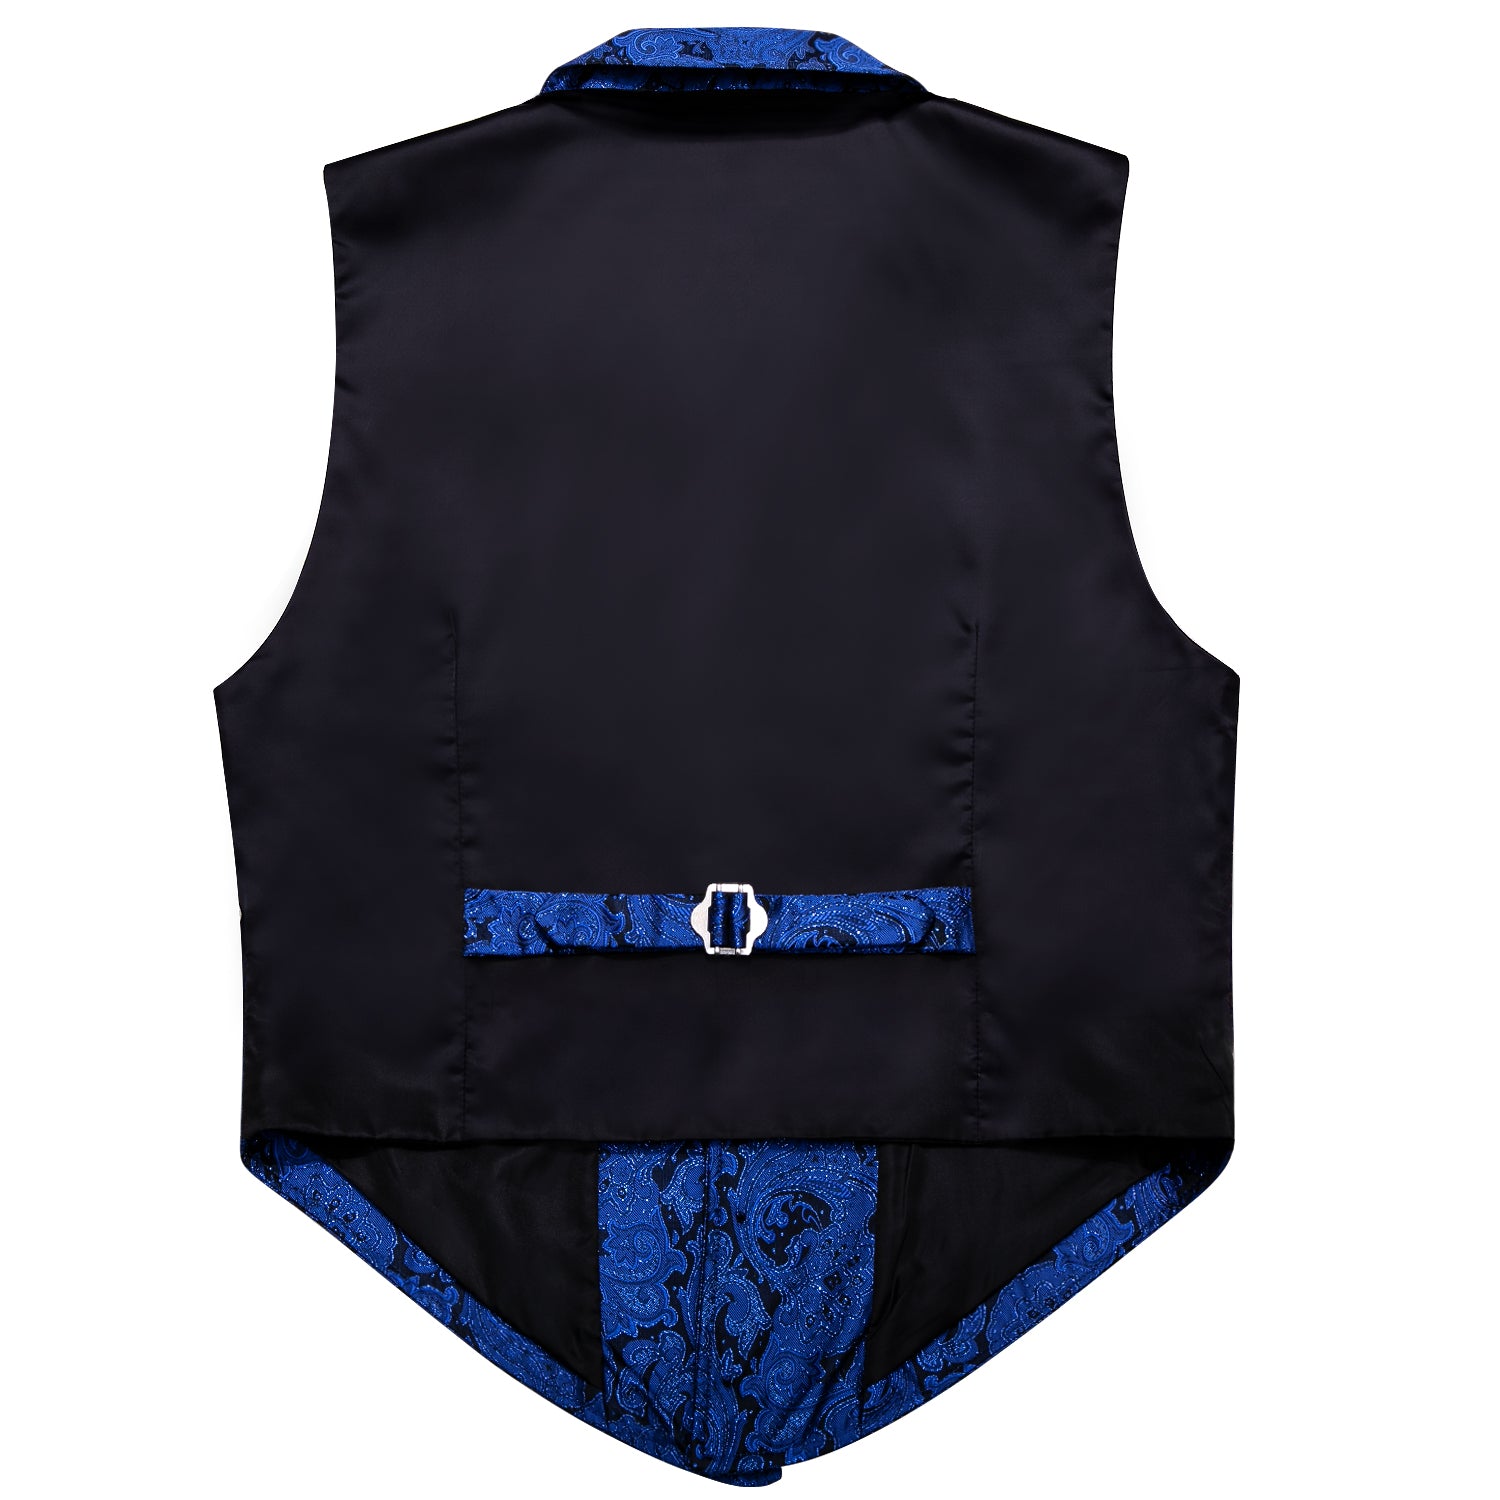 Luxury Men's Blue Floral Silk Vest